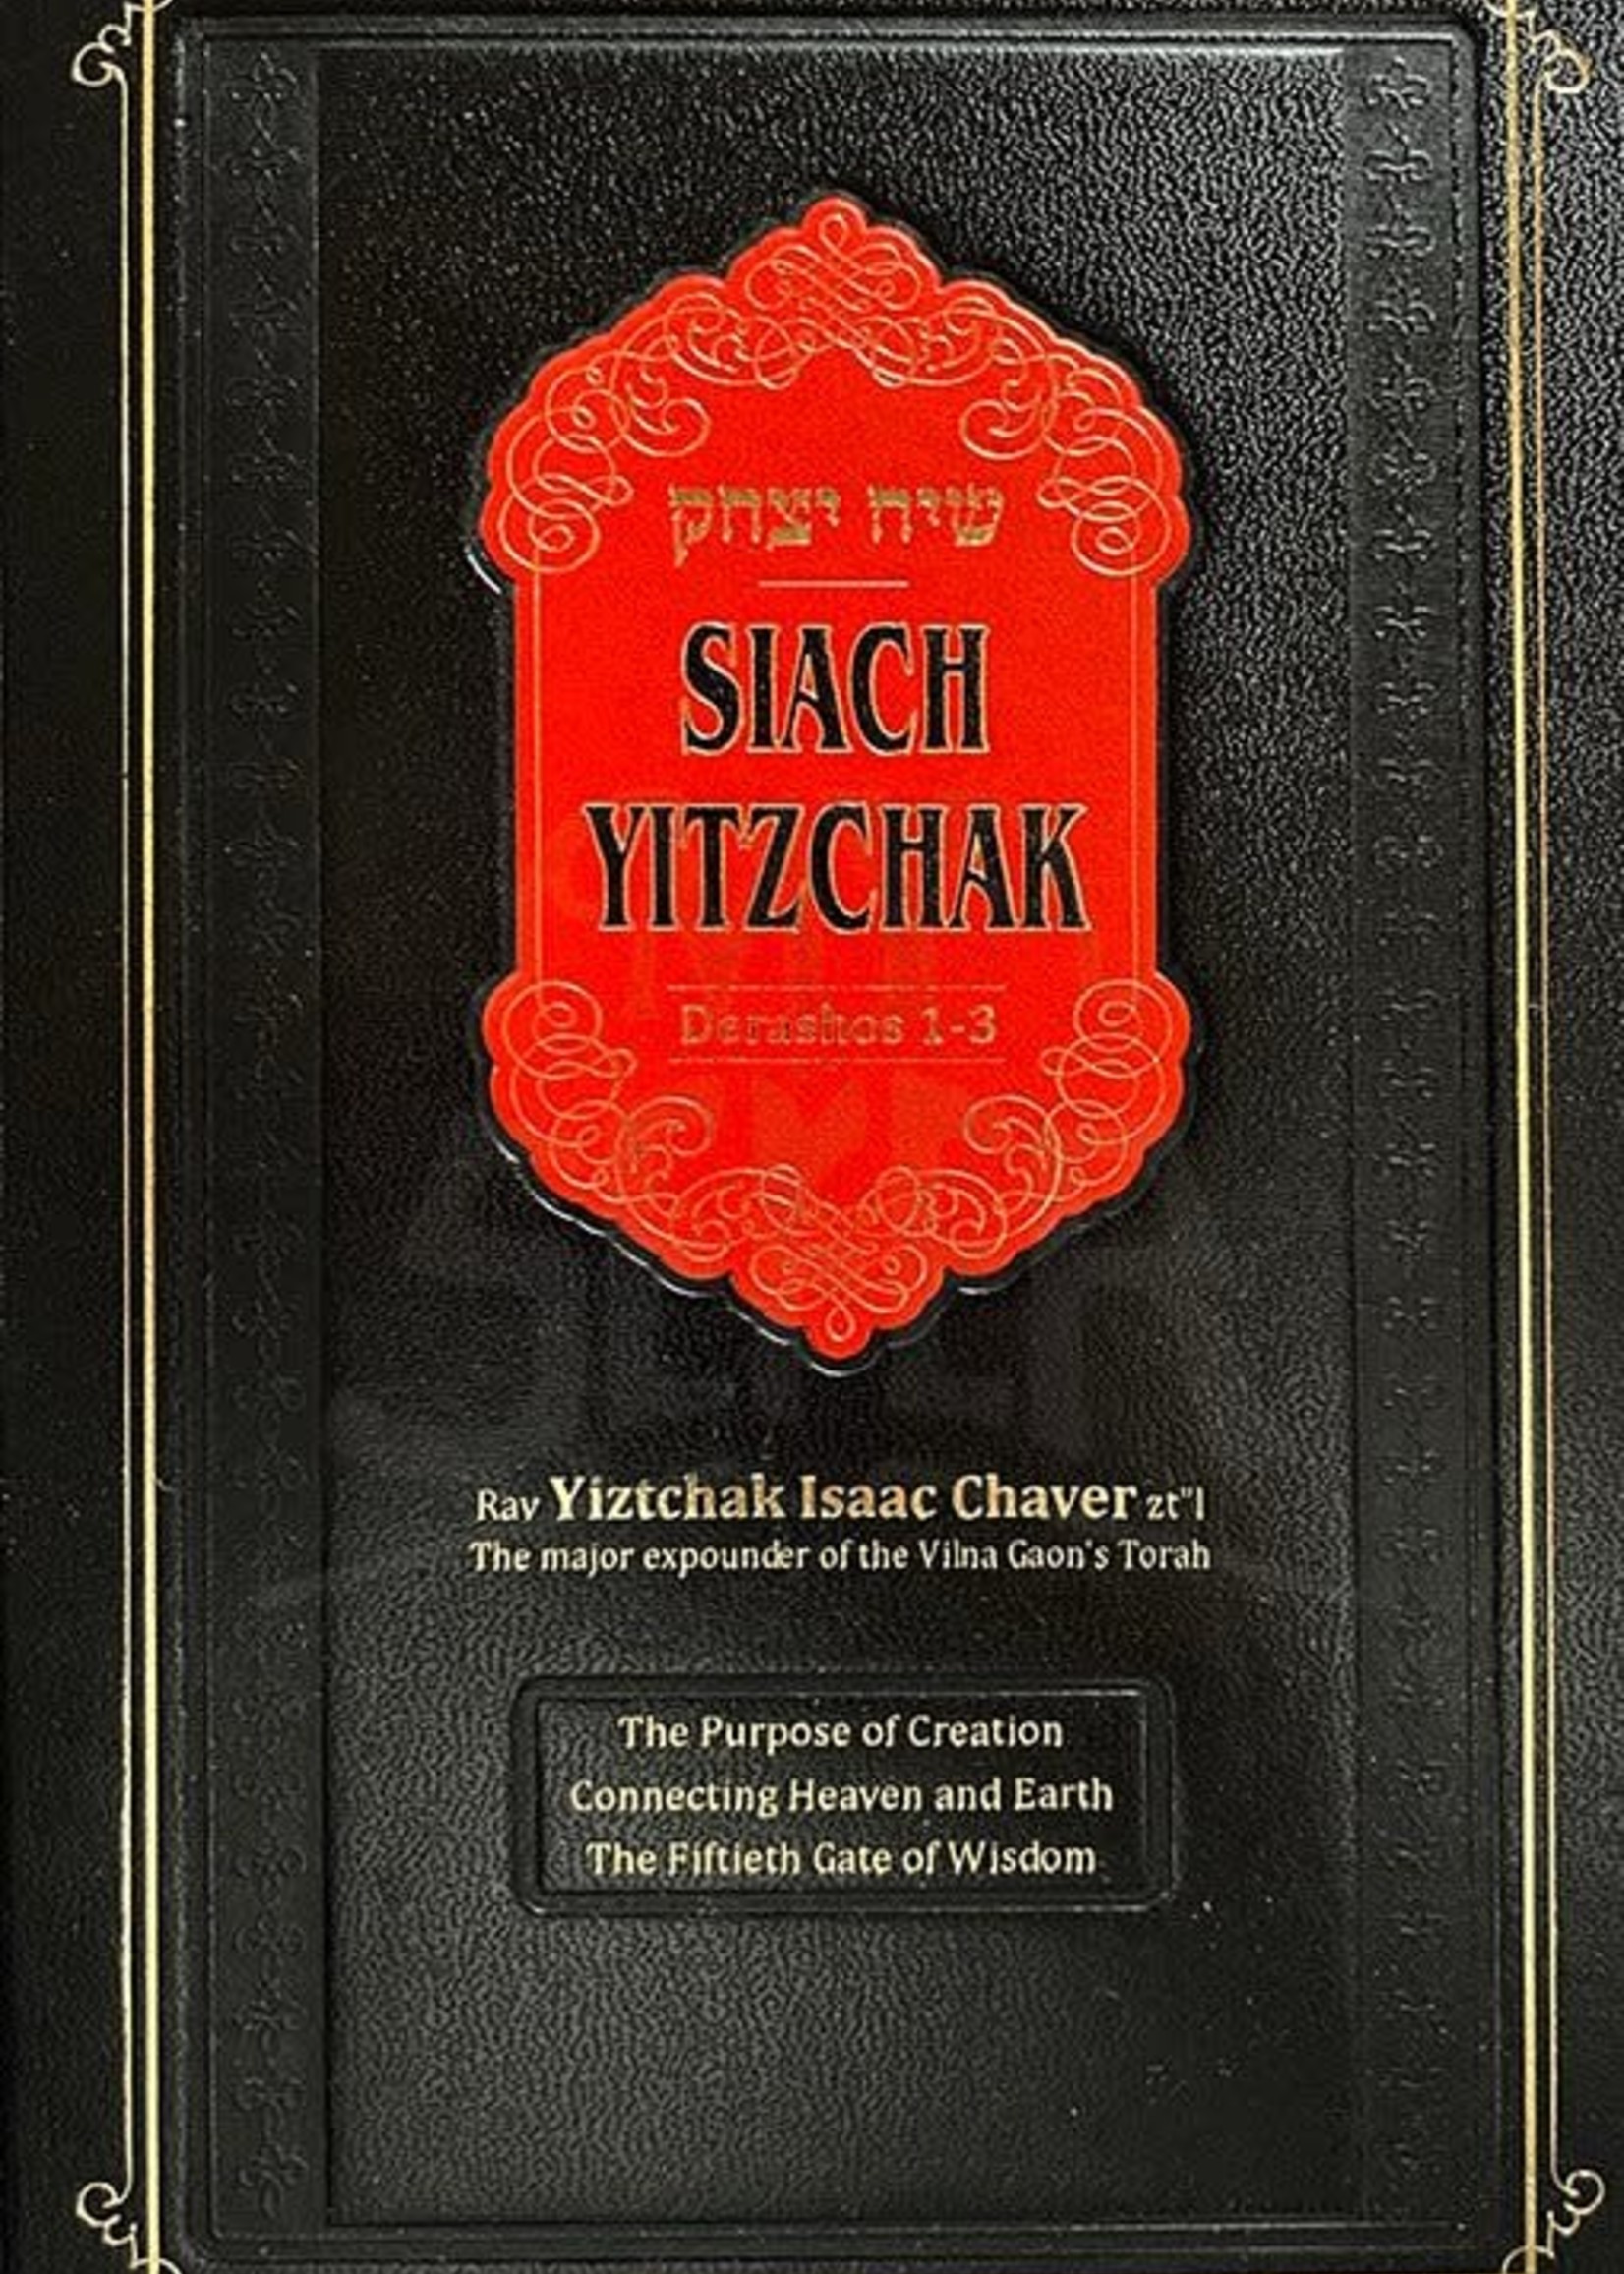 Rav Yitzchak Issac Chaver Siach Yitzchak - Derushos 1-3 - Rav Yitzchak Issac Chaver